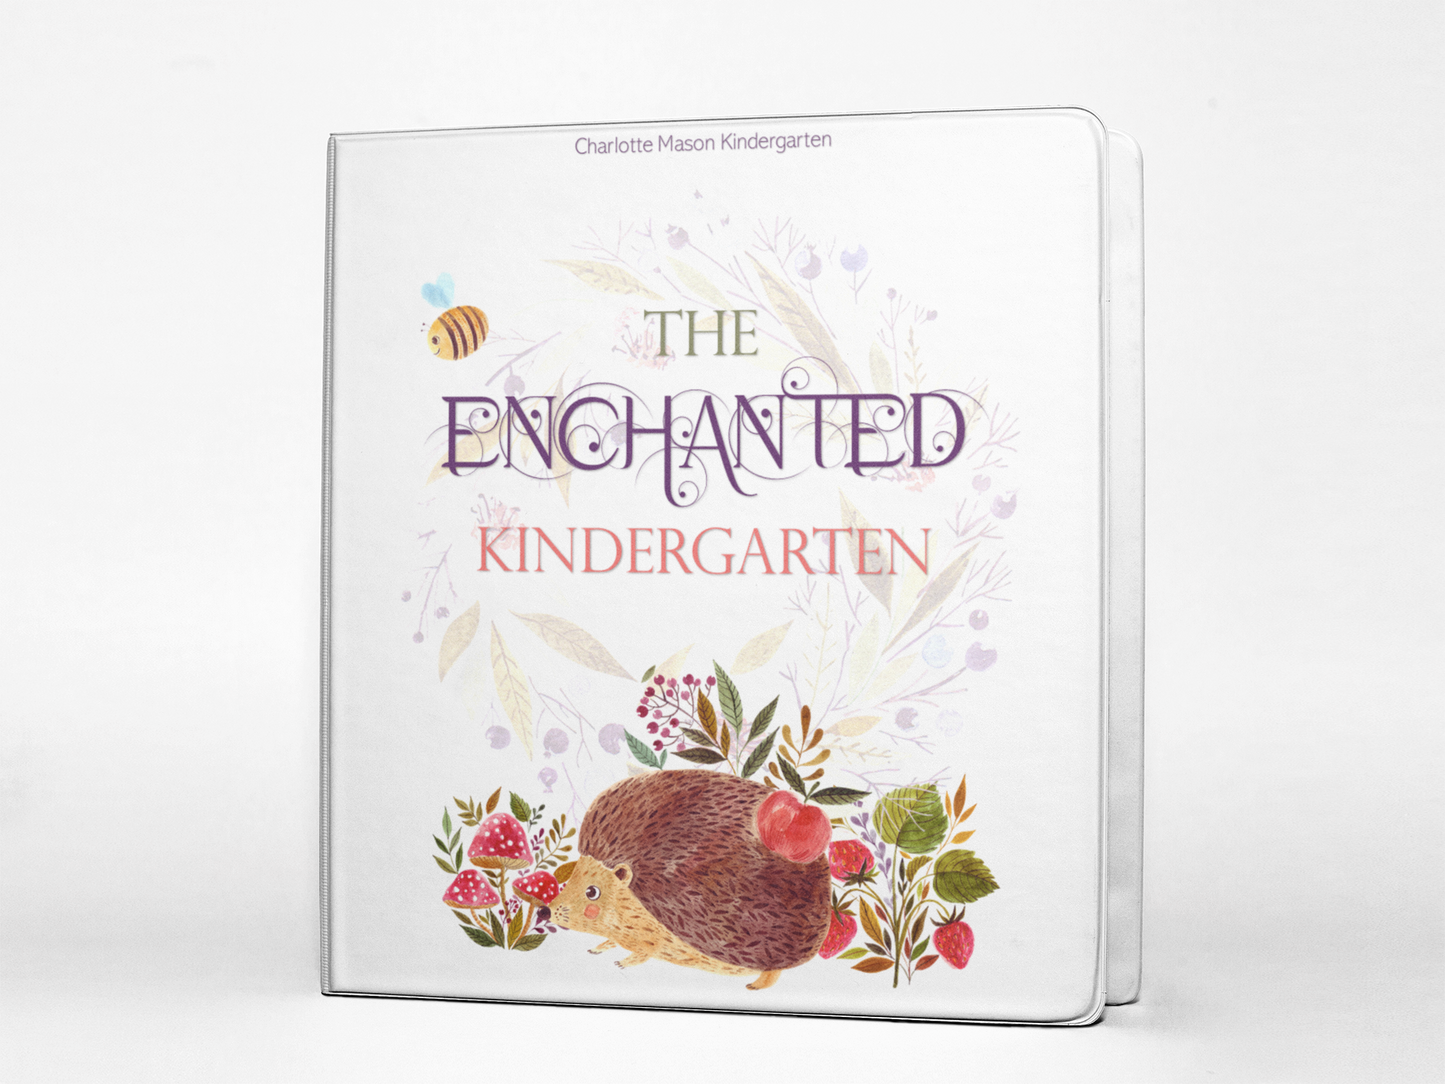 The Enchanted Kindergarten Curriculum